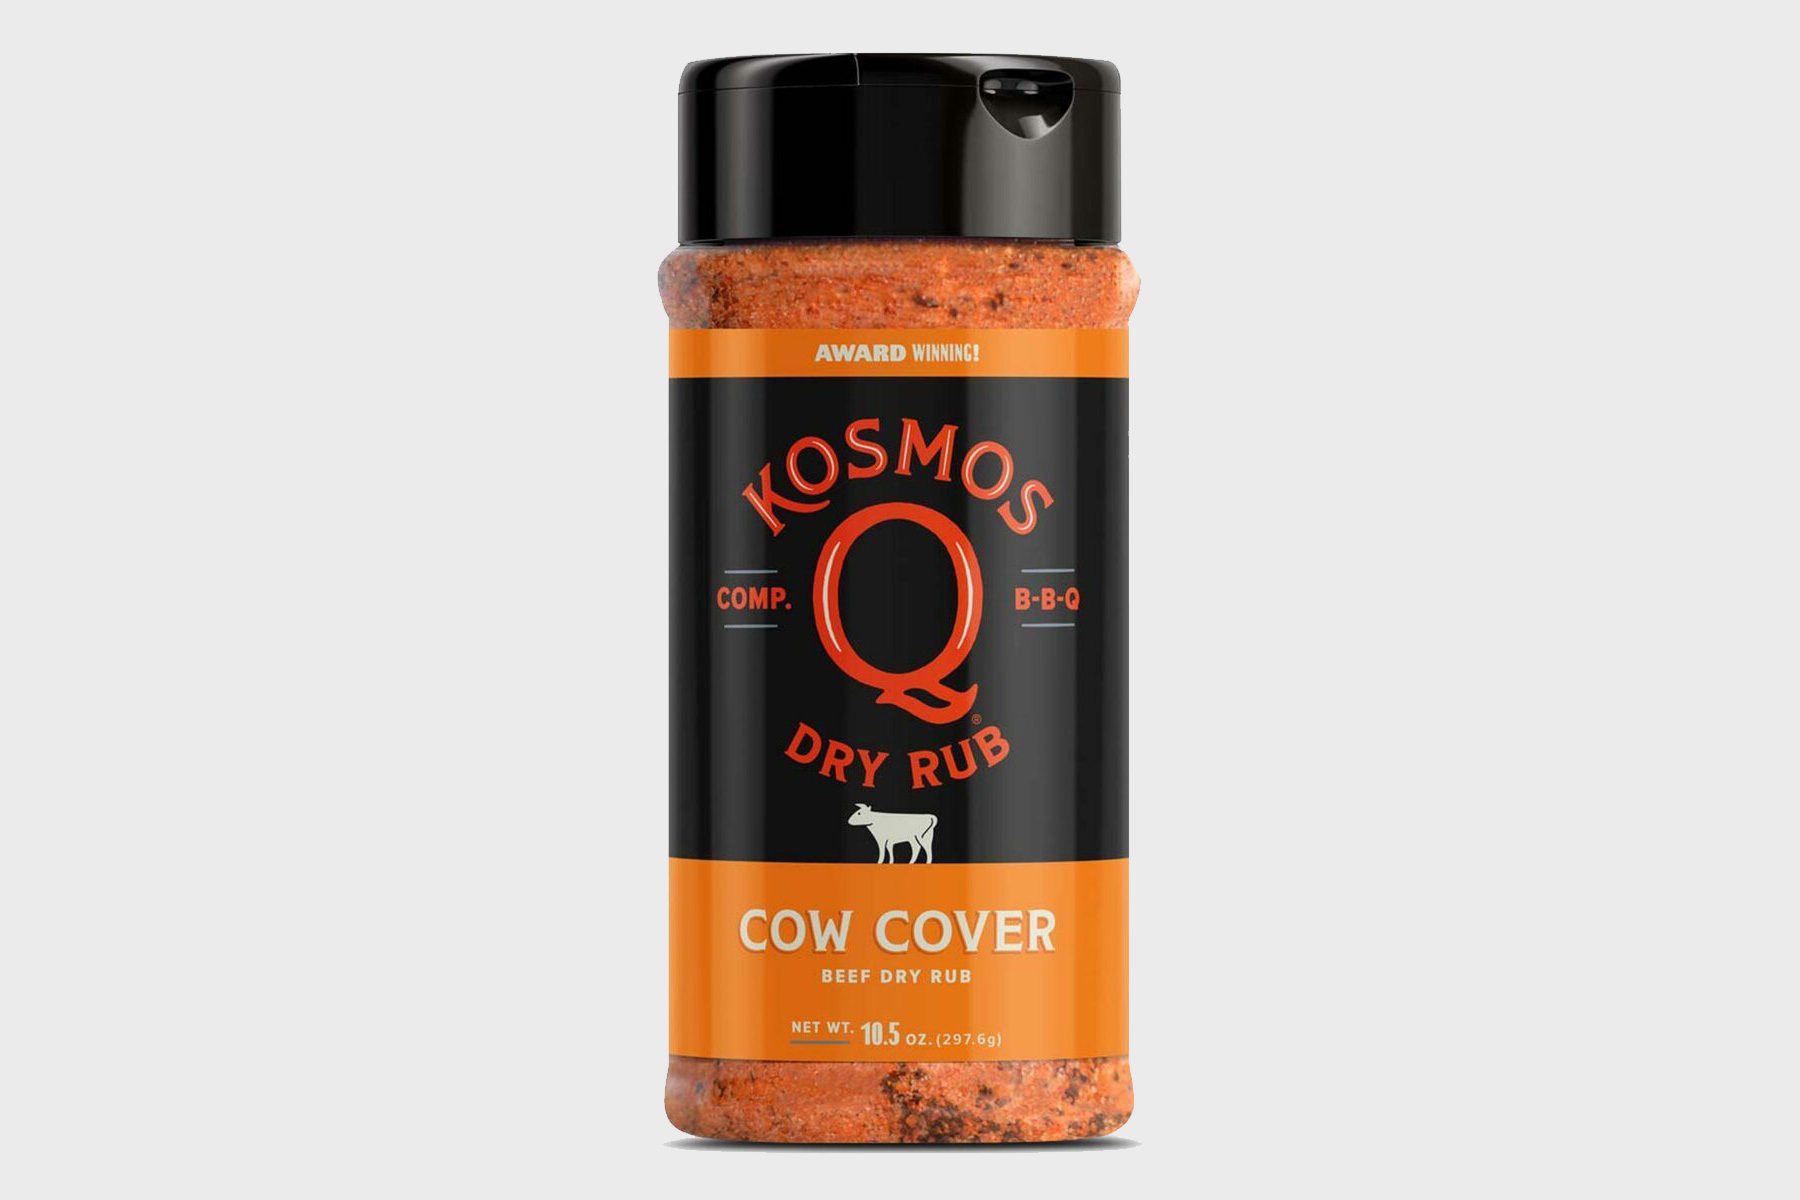 kosmos q cow cover rub